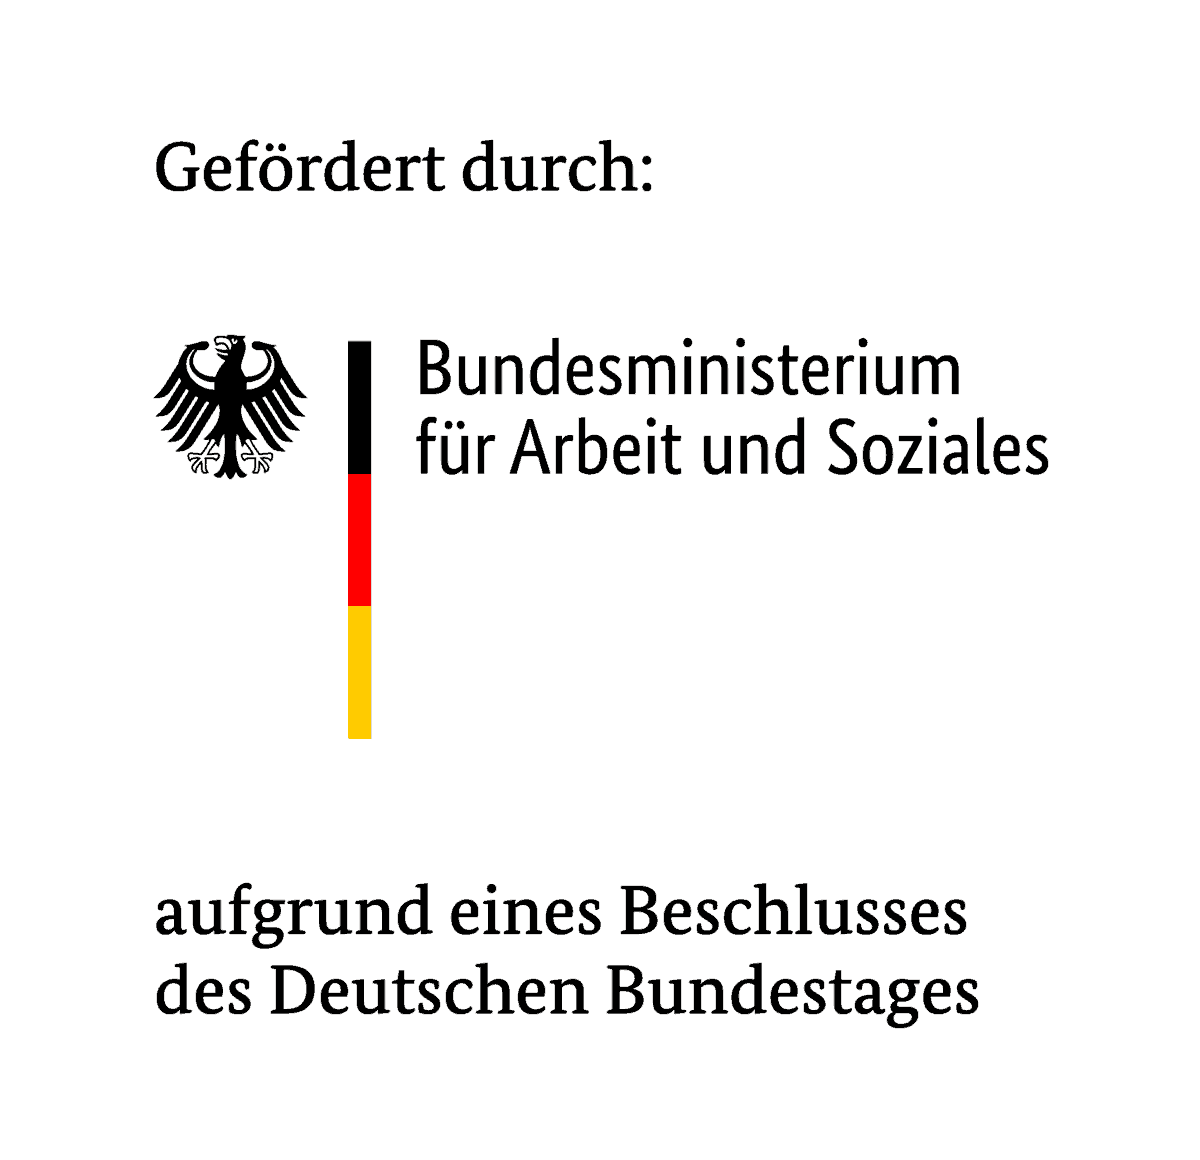 Logo - Gefördert durch: Bundesministerium für Arbeit und Soziales